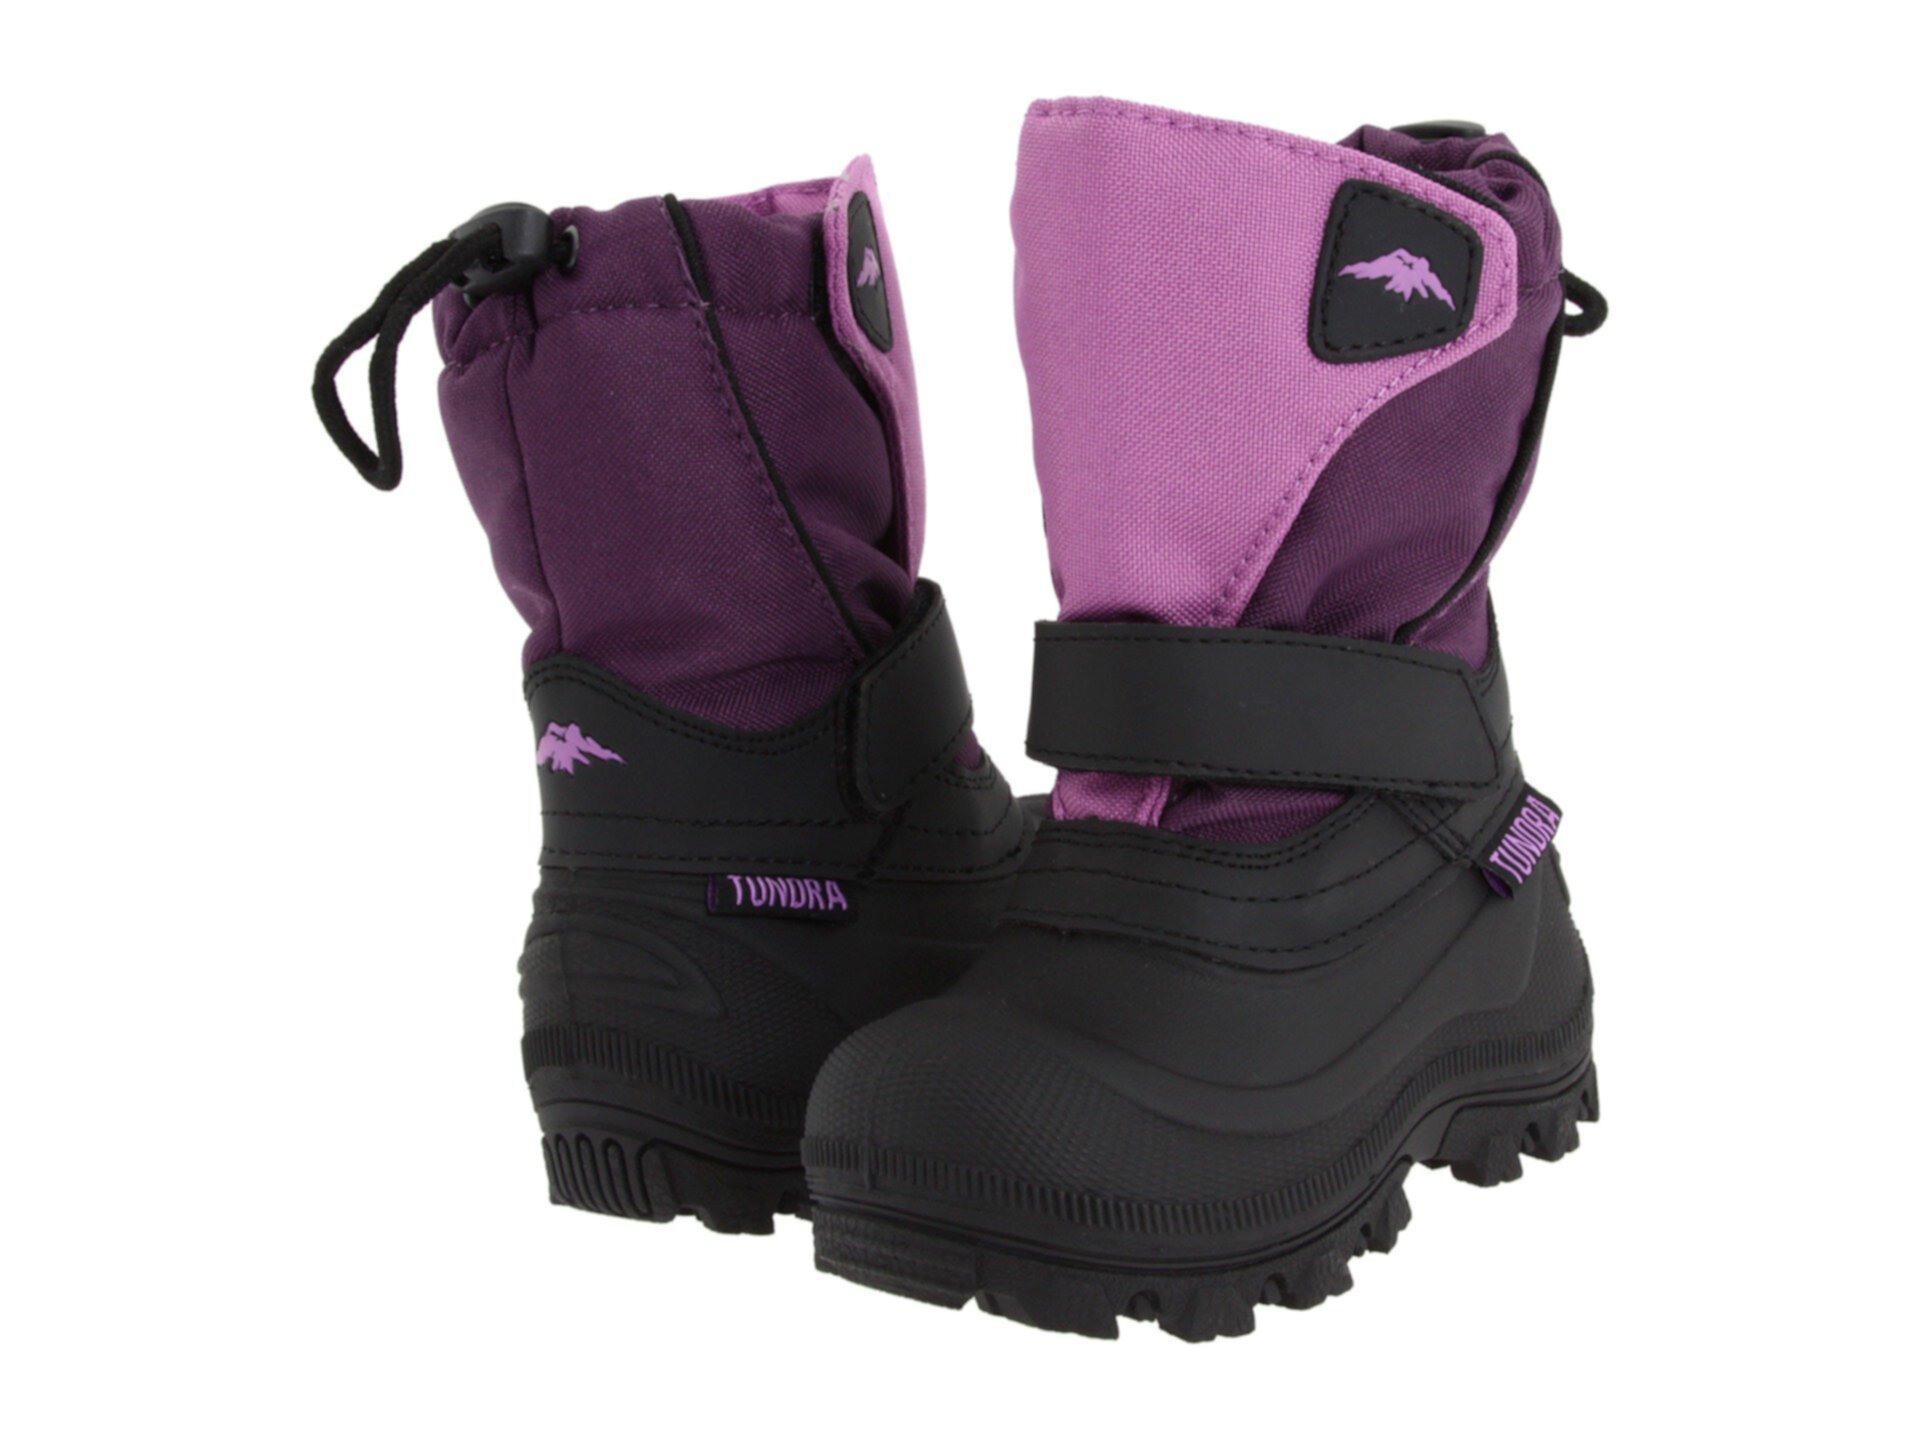 Квебек Широкий (Малыш / Маленький ребенок / Большой ребенок) Tundra Boots Kids